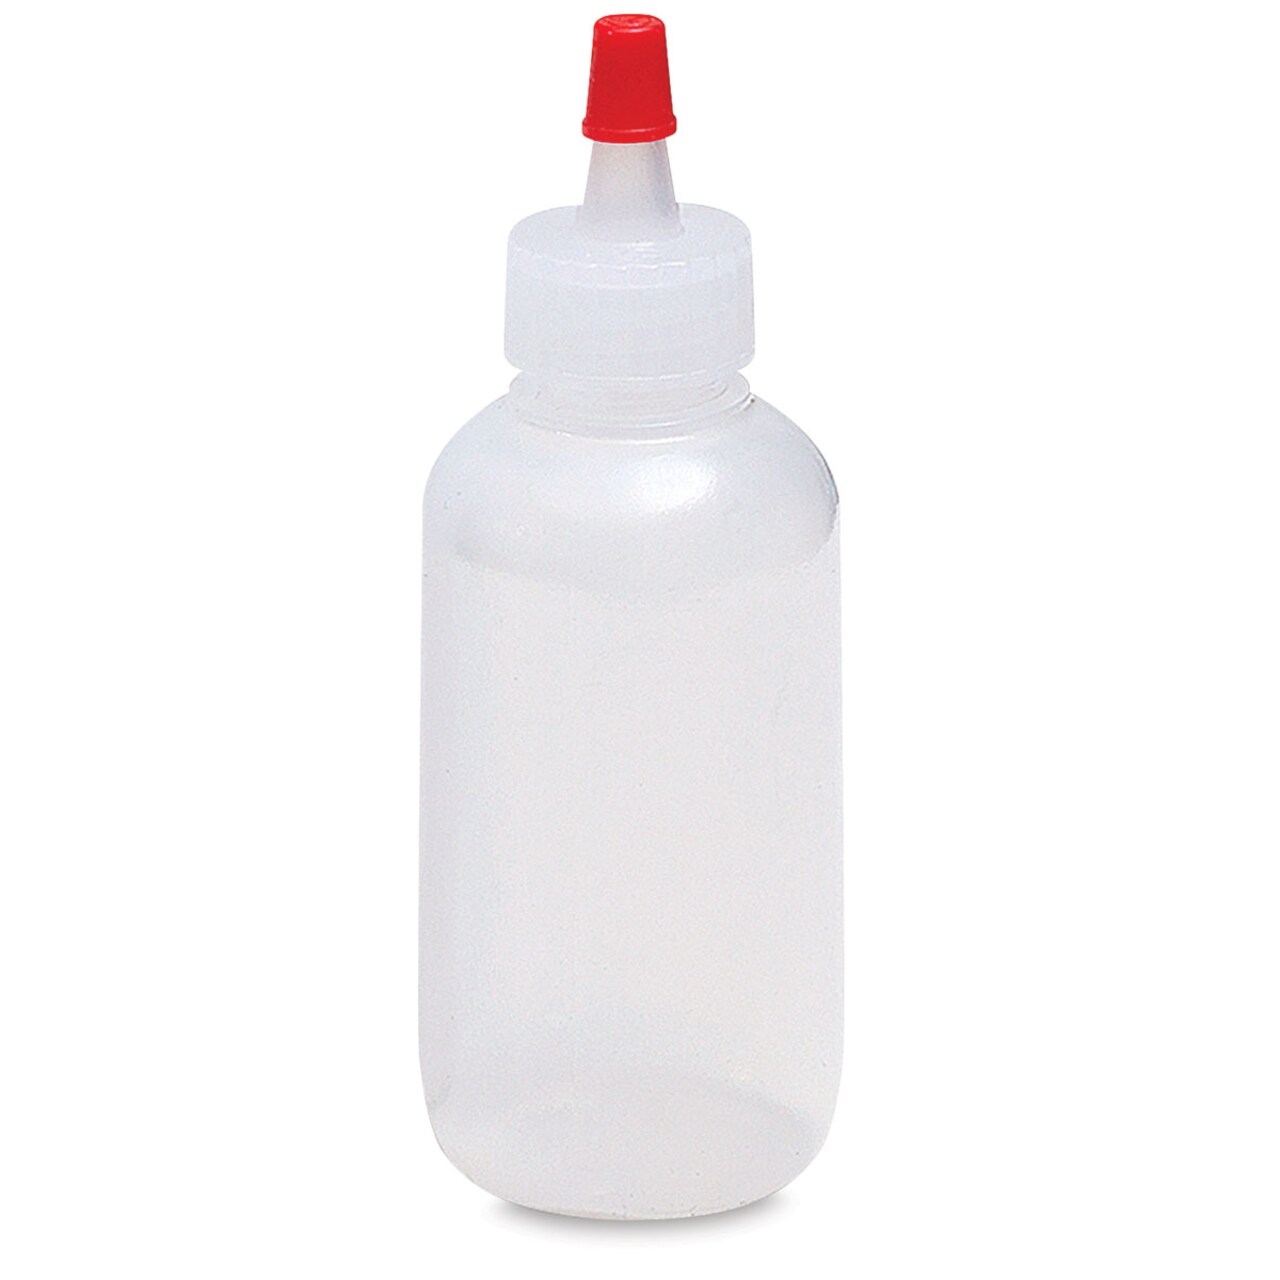 Richeson Plastic Squeeze Bottle - 2 oz